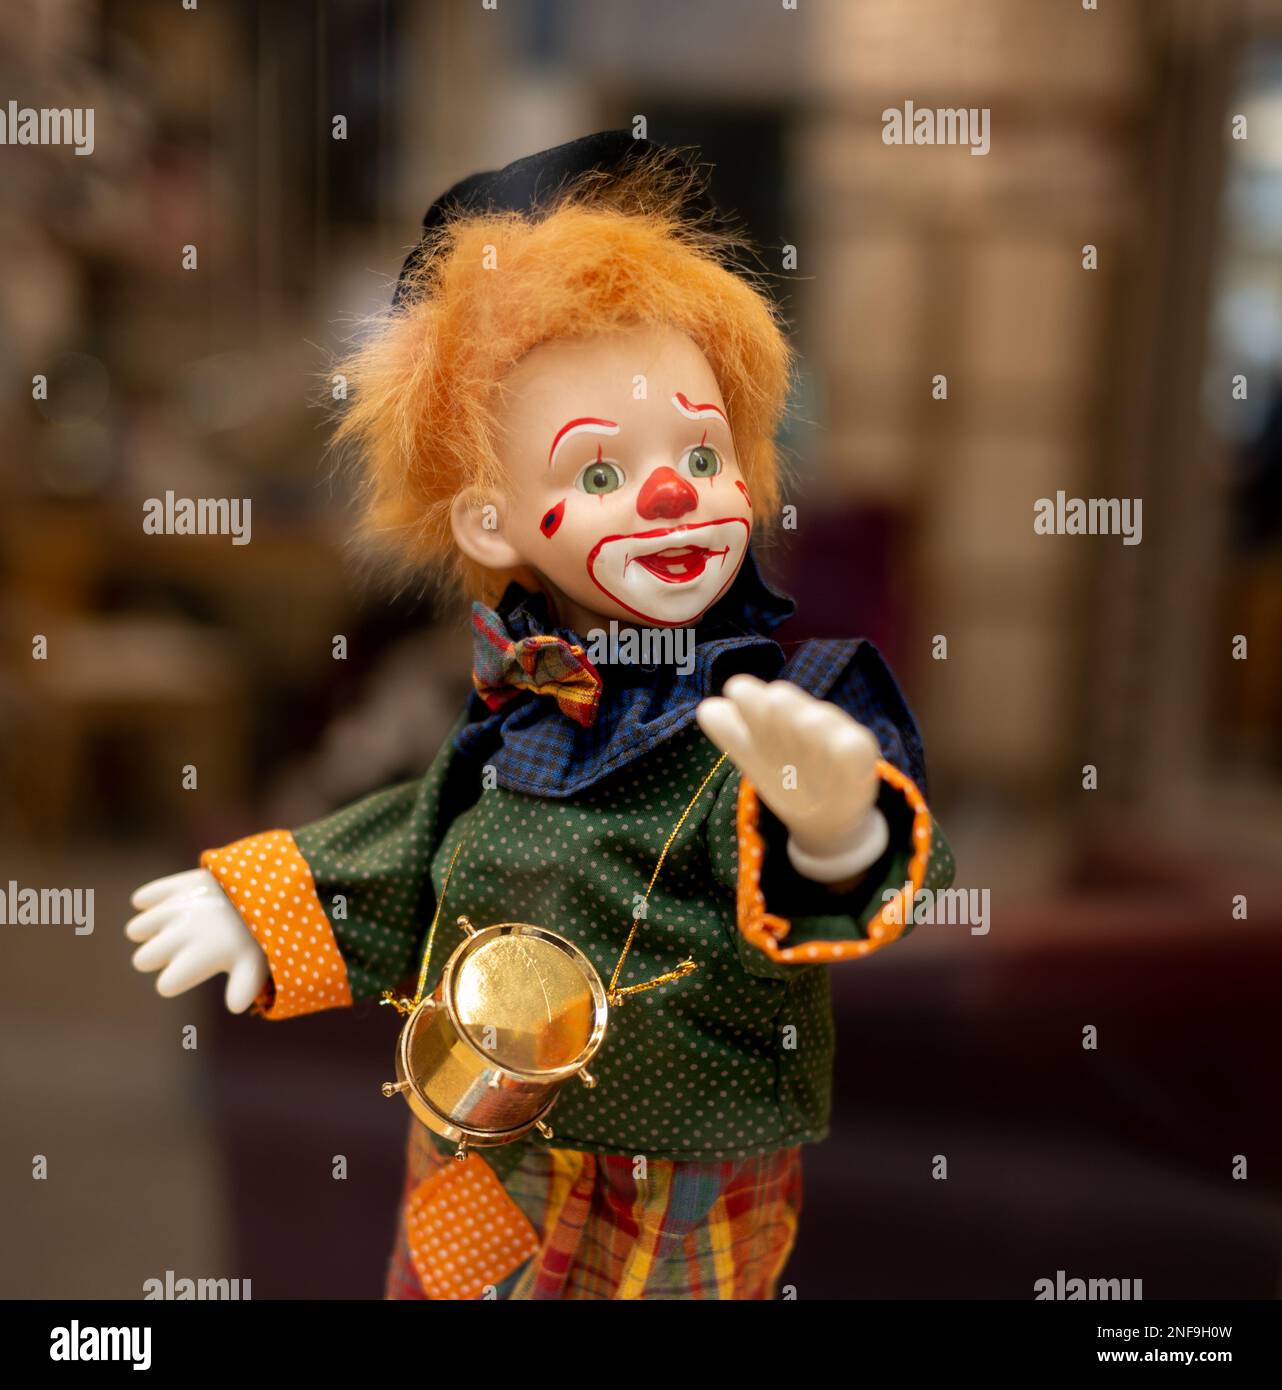 Une poupée de clown très colorée avec des cheveux orange et un nez rouge Banque D'Images